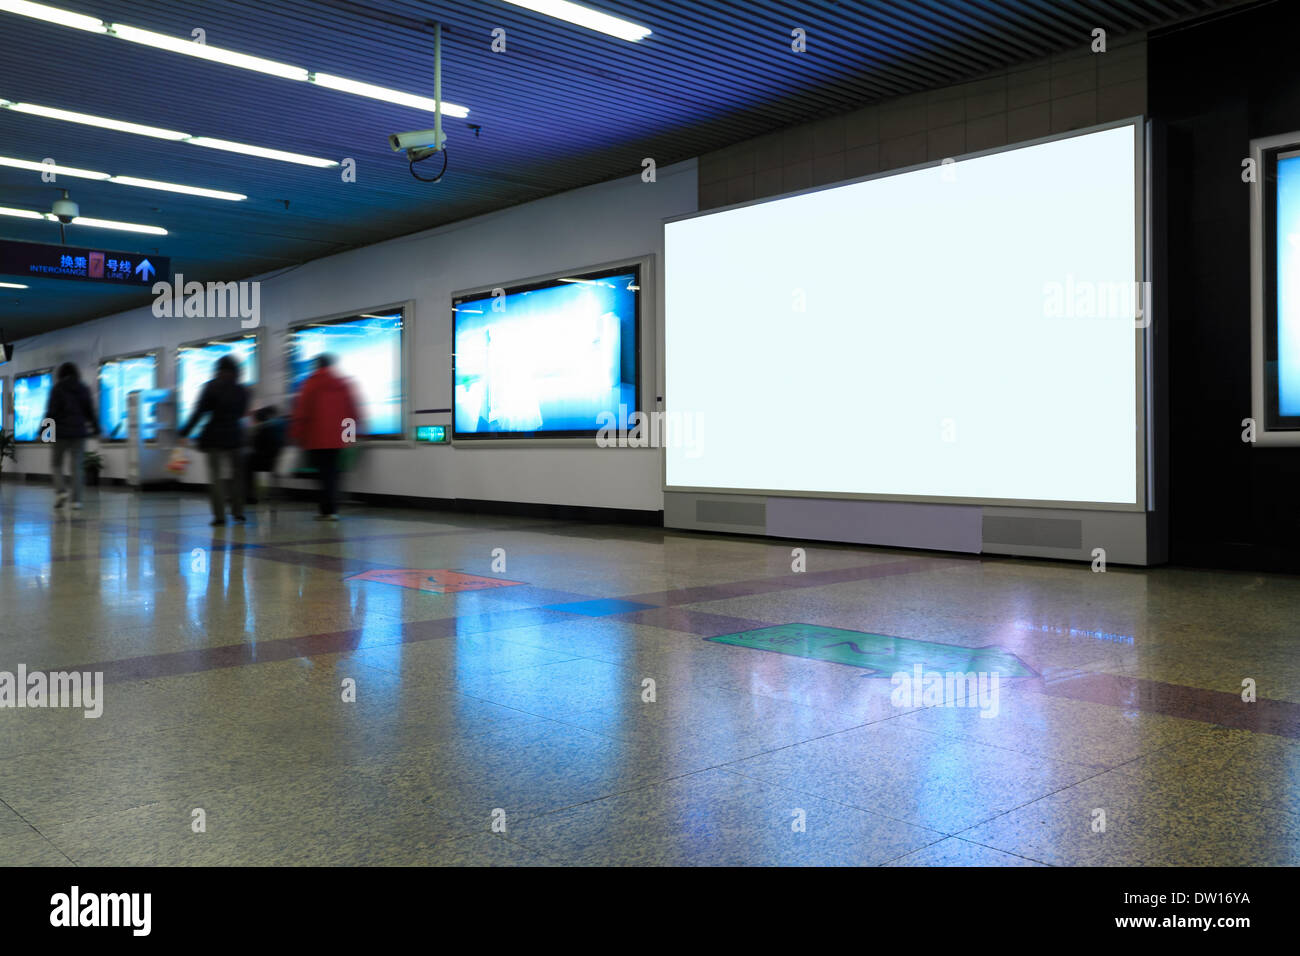 La station de métro en écran publicitaire Banque D'Images